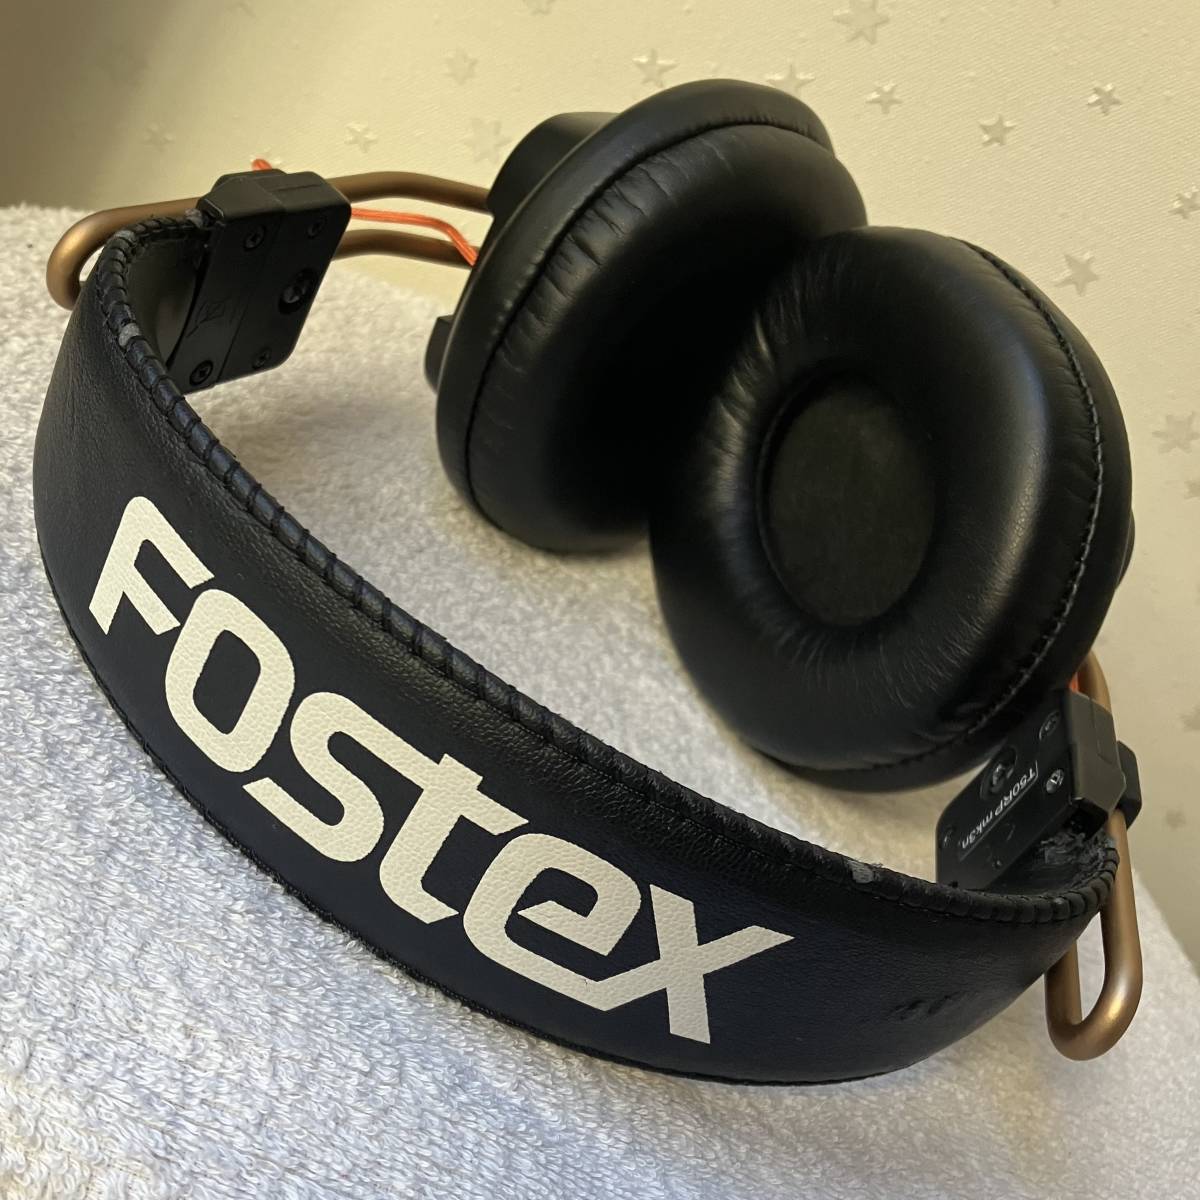 FOSTEX フォステクス T50RP カスタム品 音出し確認品 イヤーパッド新品 純正品_画像2